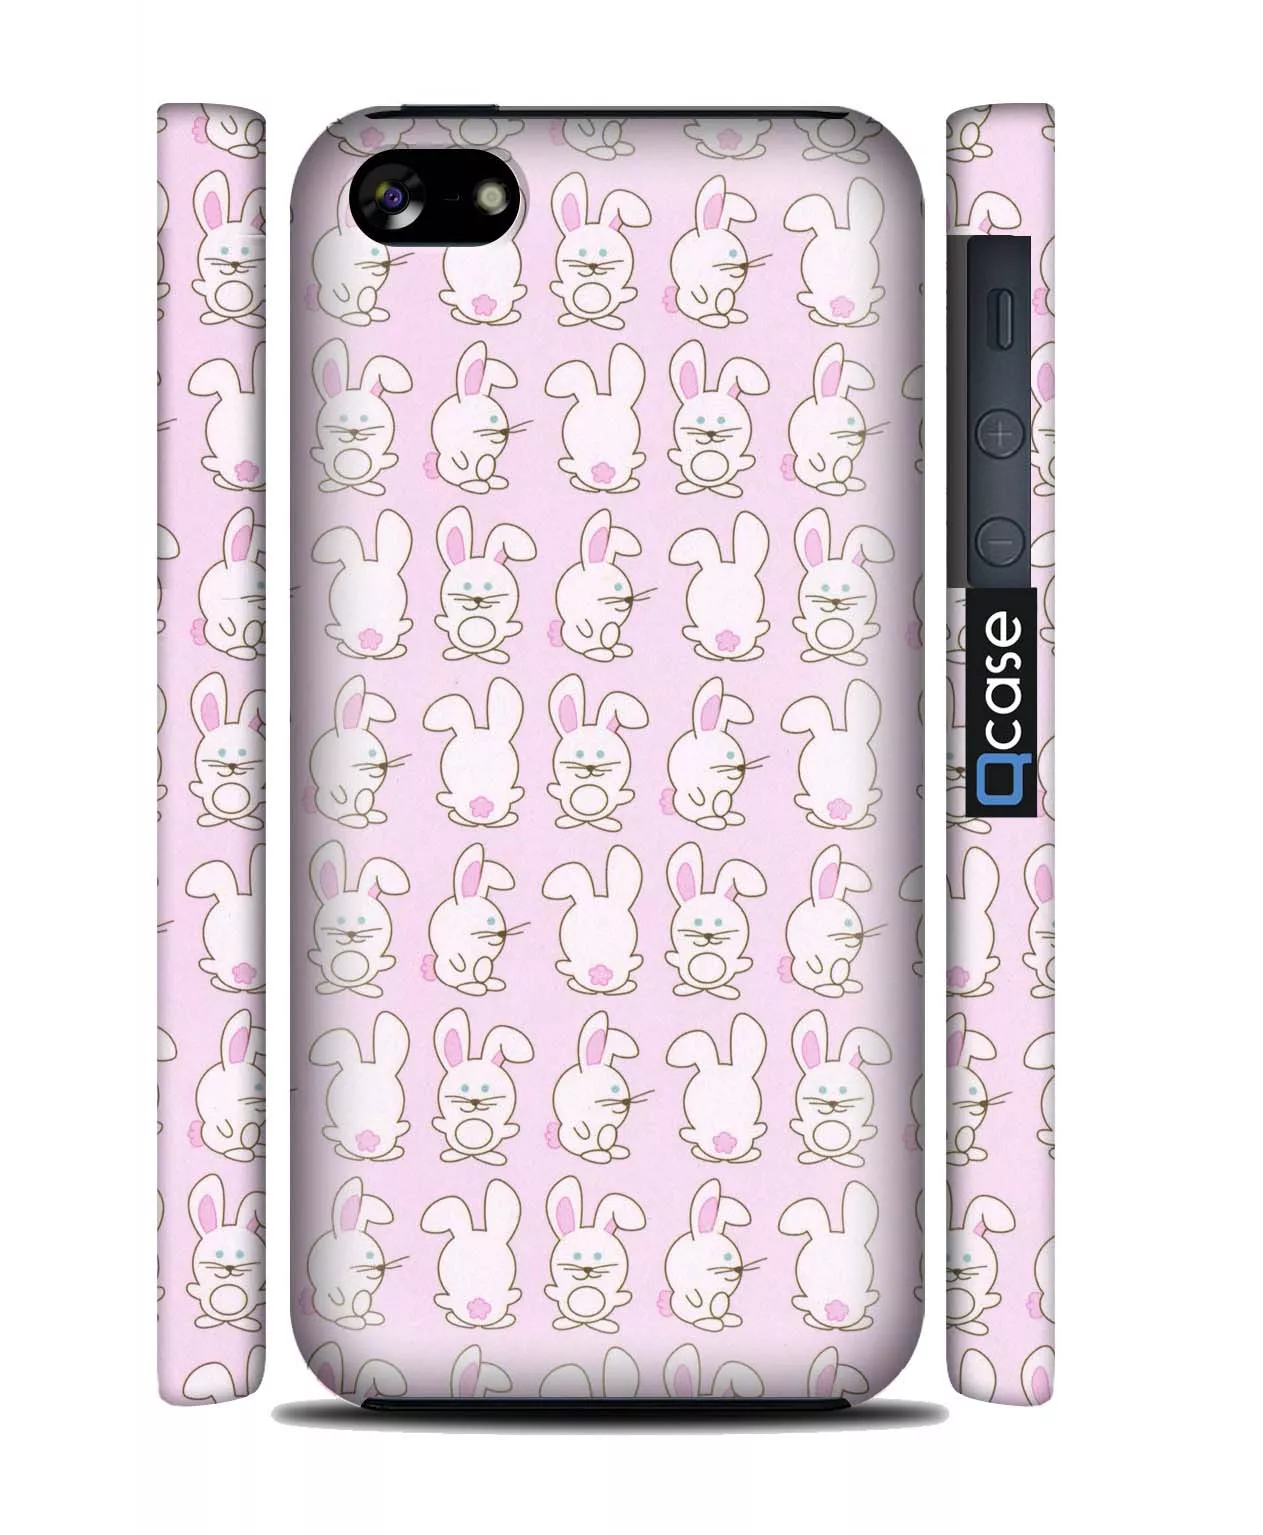 Нежный чехол с веселыми зайцами для iPhone 5C | 3D-Печать - Rabits